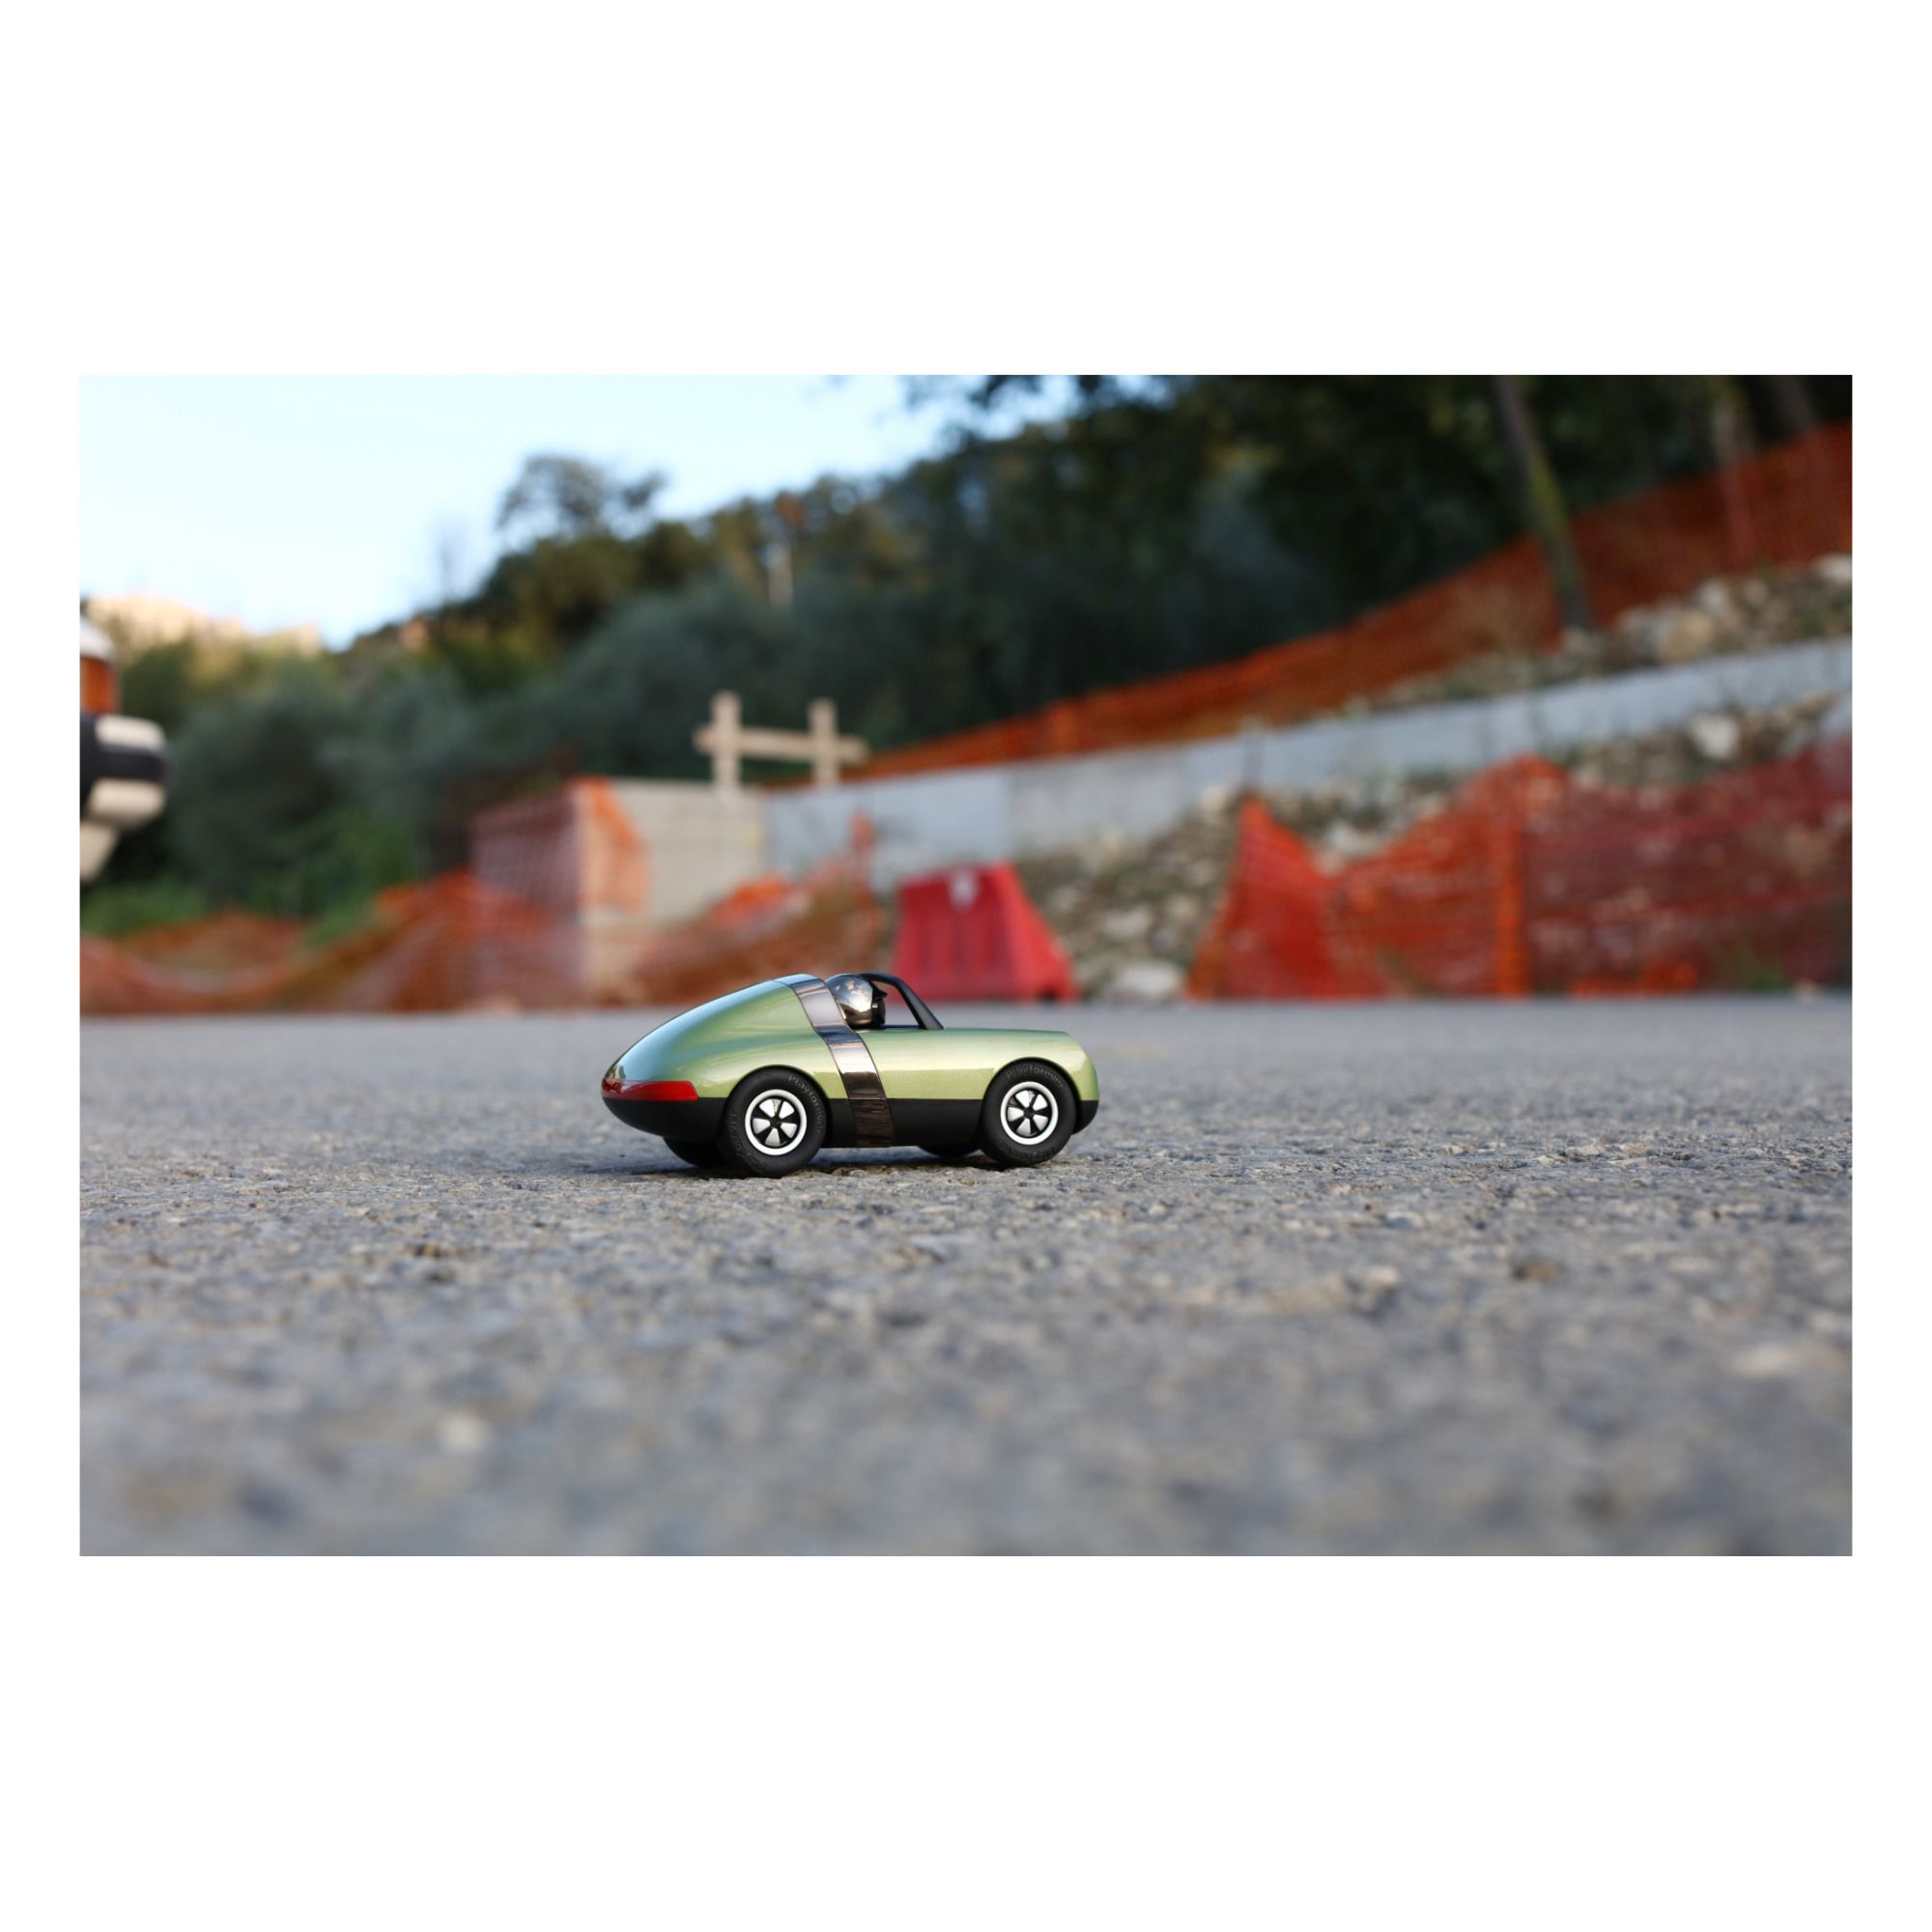 Luft Spielzeugauto Grünolive- Produktbild Nr. 4